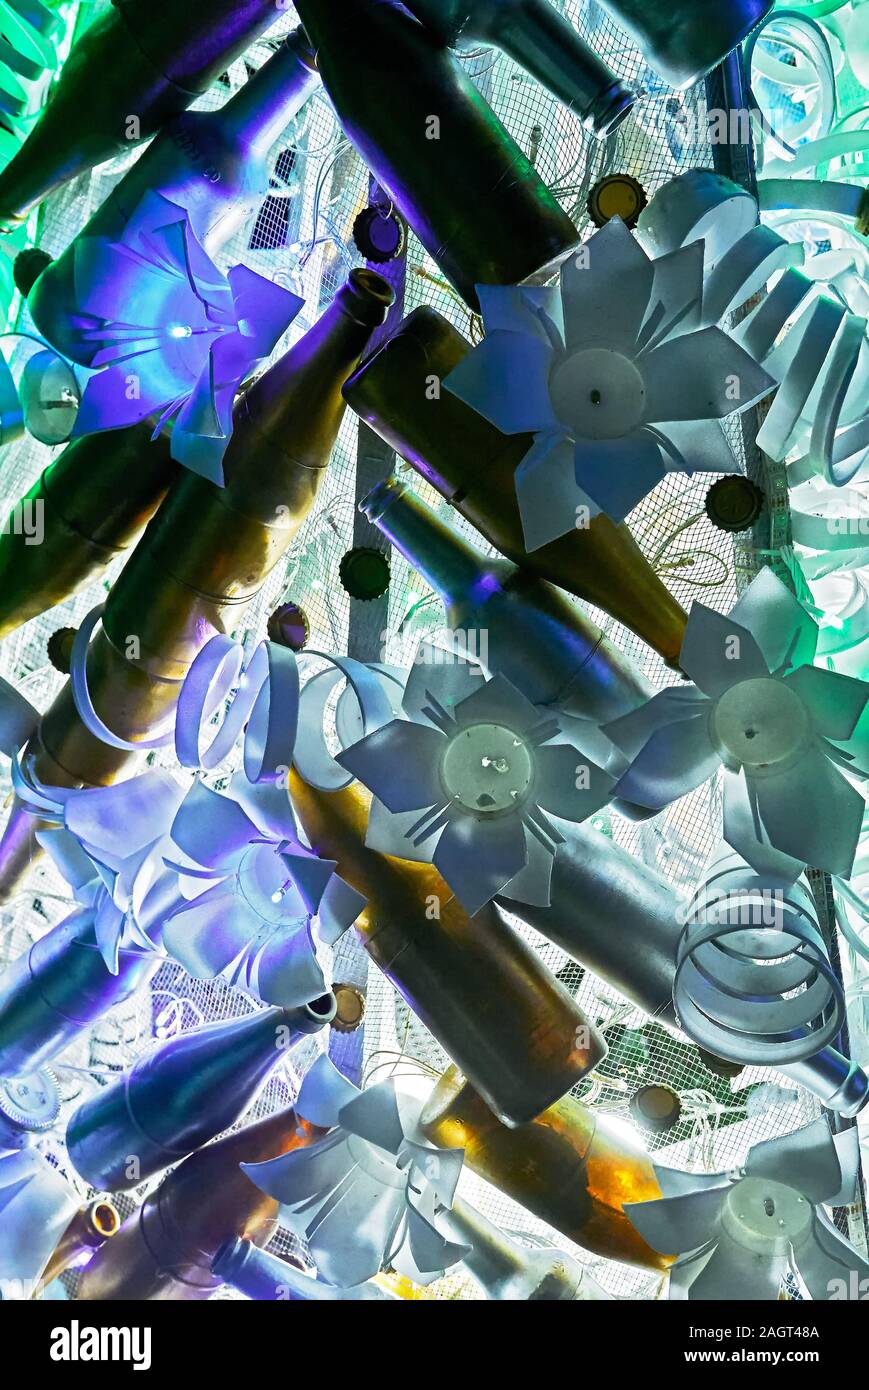 Close-up of a rare Noël Décoration des plastiques recyclés et des bouteilles vides combinée avec des feux en forme de fleur à froid Banque D'Images